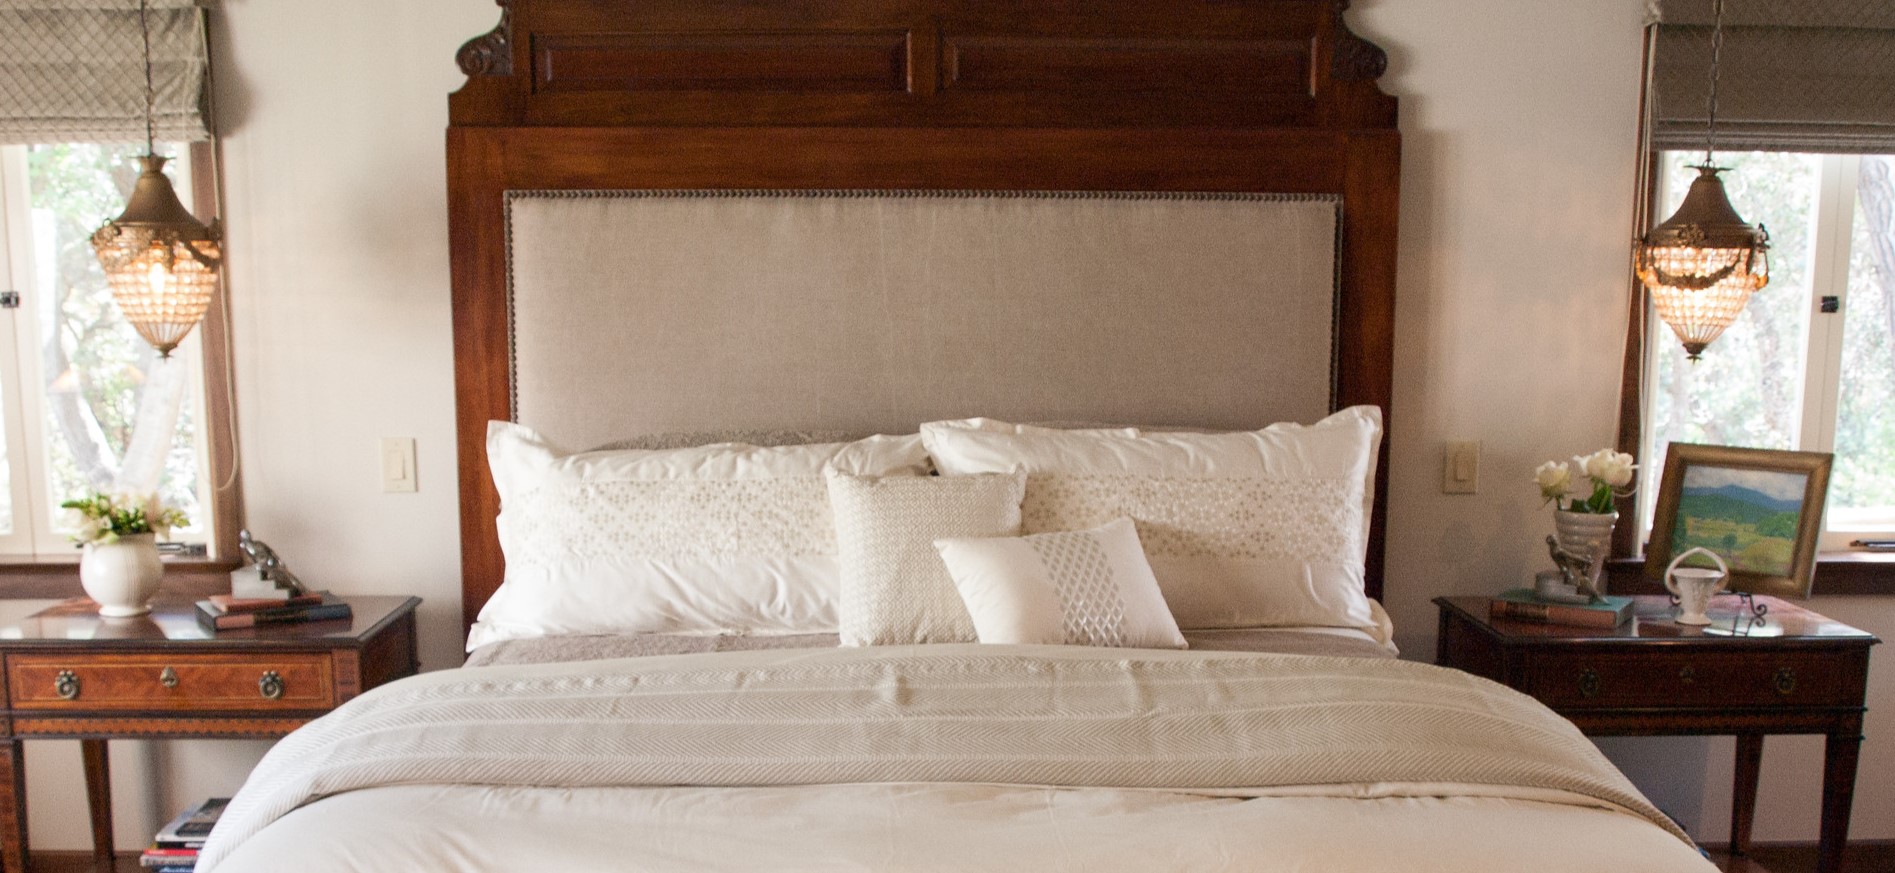 Изголовье кровати отлично сочетается с классическими прикроватными тумбочками